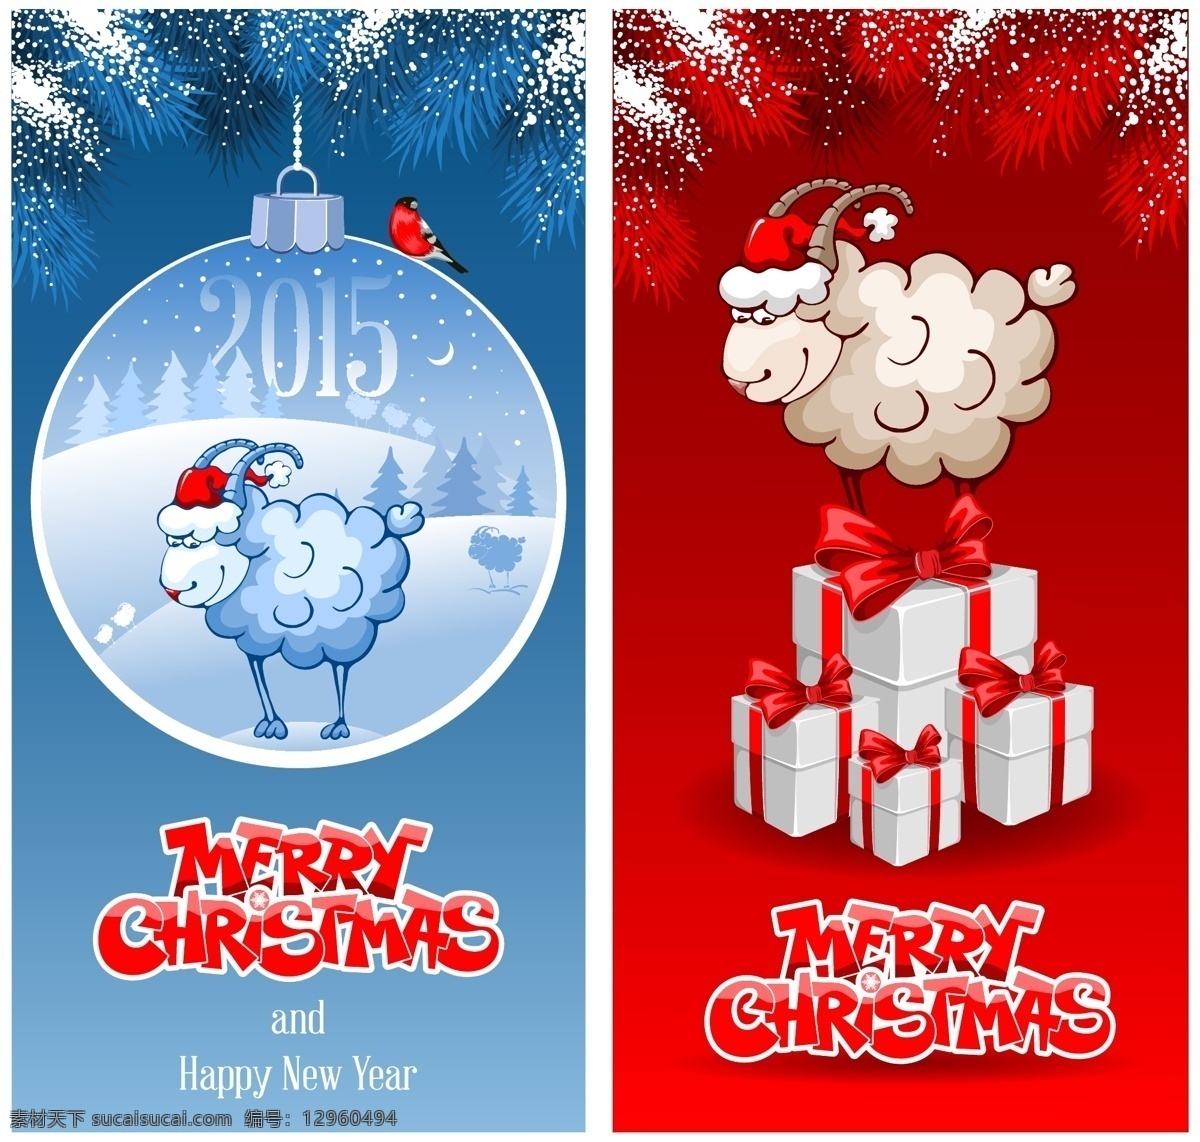 卡通 羊 圣诞 christmas merry 袋子 蓝色背景 礼物 红色圣诞老人 节日素材 圣诞节